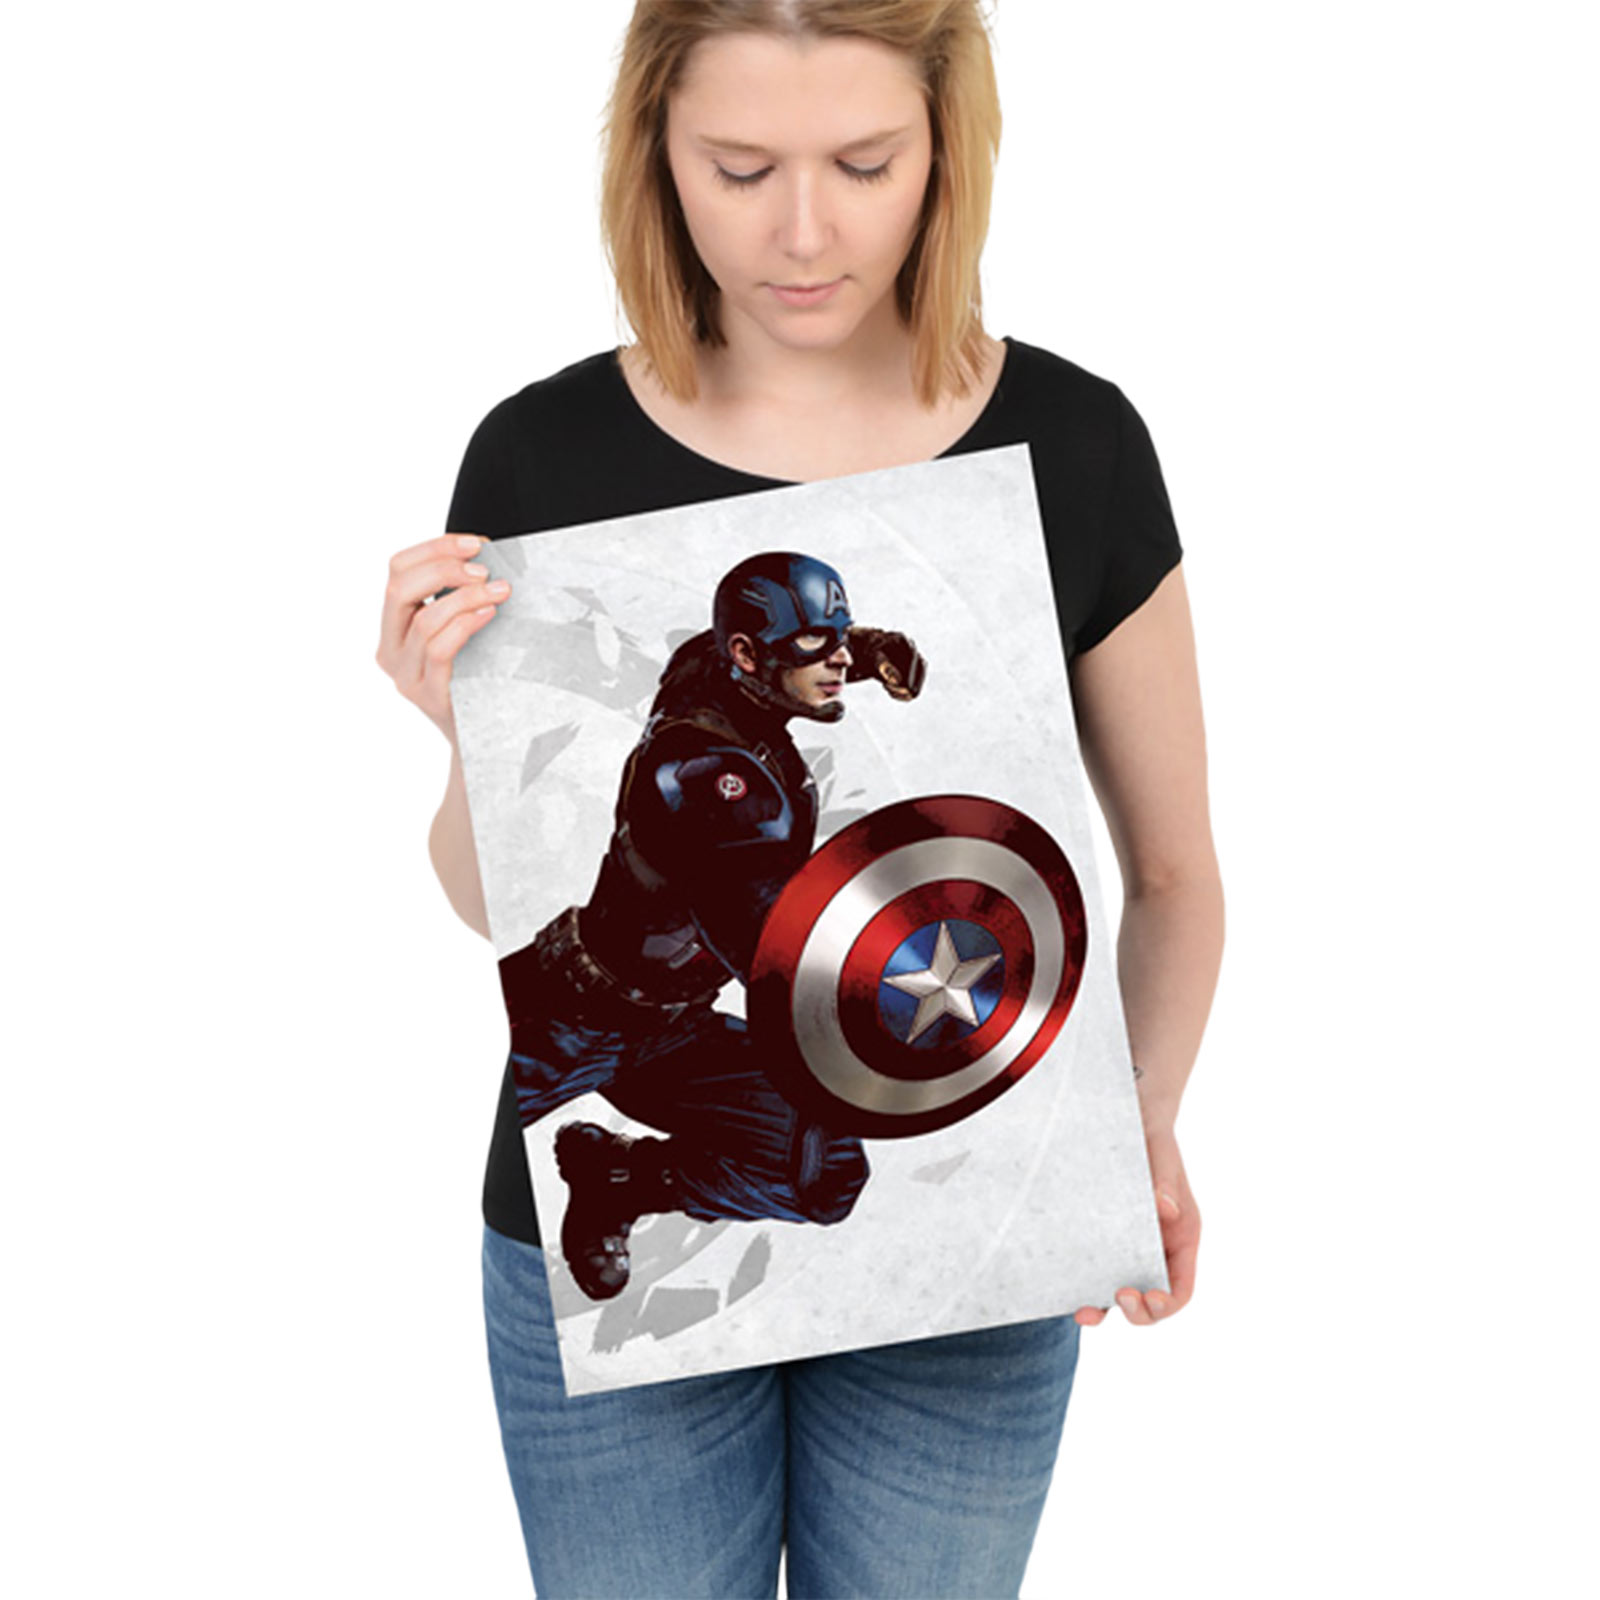 Captain America - Civil War Metall Poster